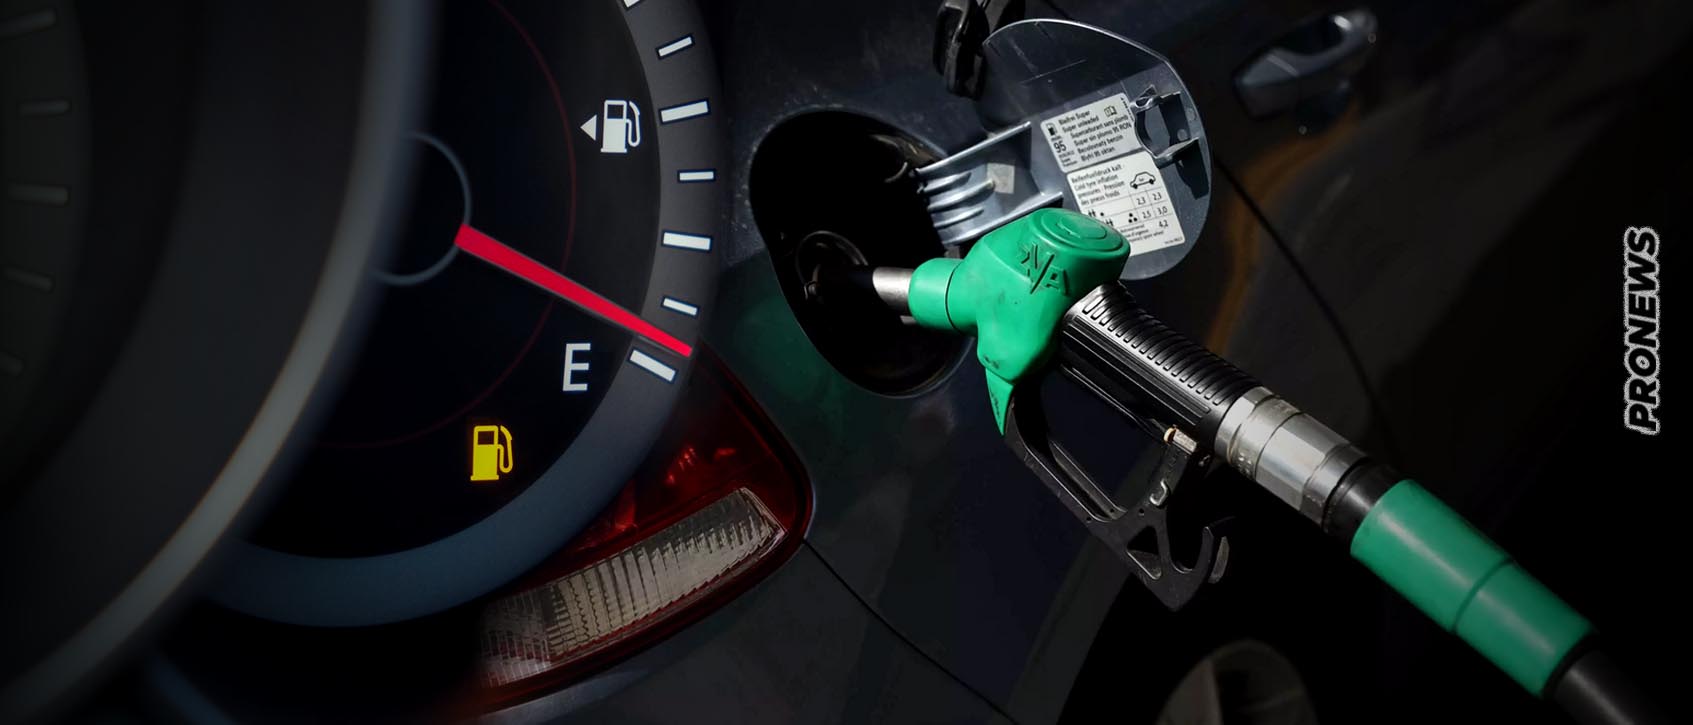 Έρχονται δύσκολες μέρες: Θα ξεπεράσει τα 2 € το λίτρο η τιμή της βενζίνης μέχρι το Πάσχα λόγω της «ανάφλεξης» στην Μέση Ανατολή